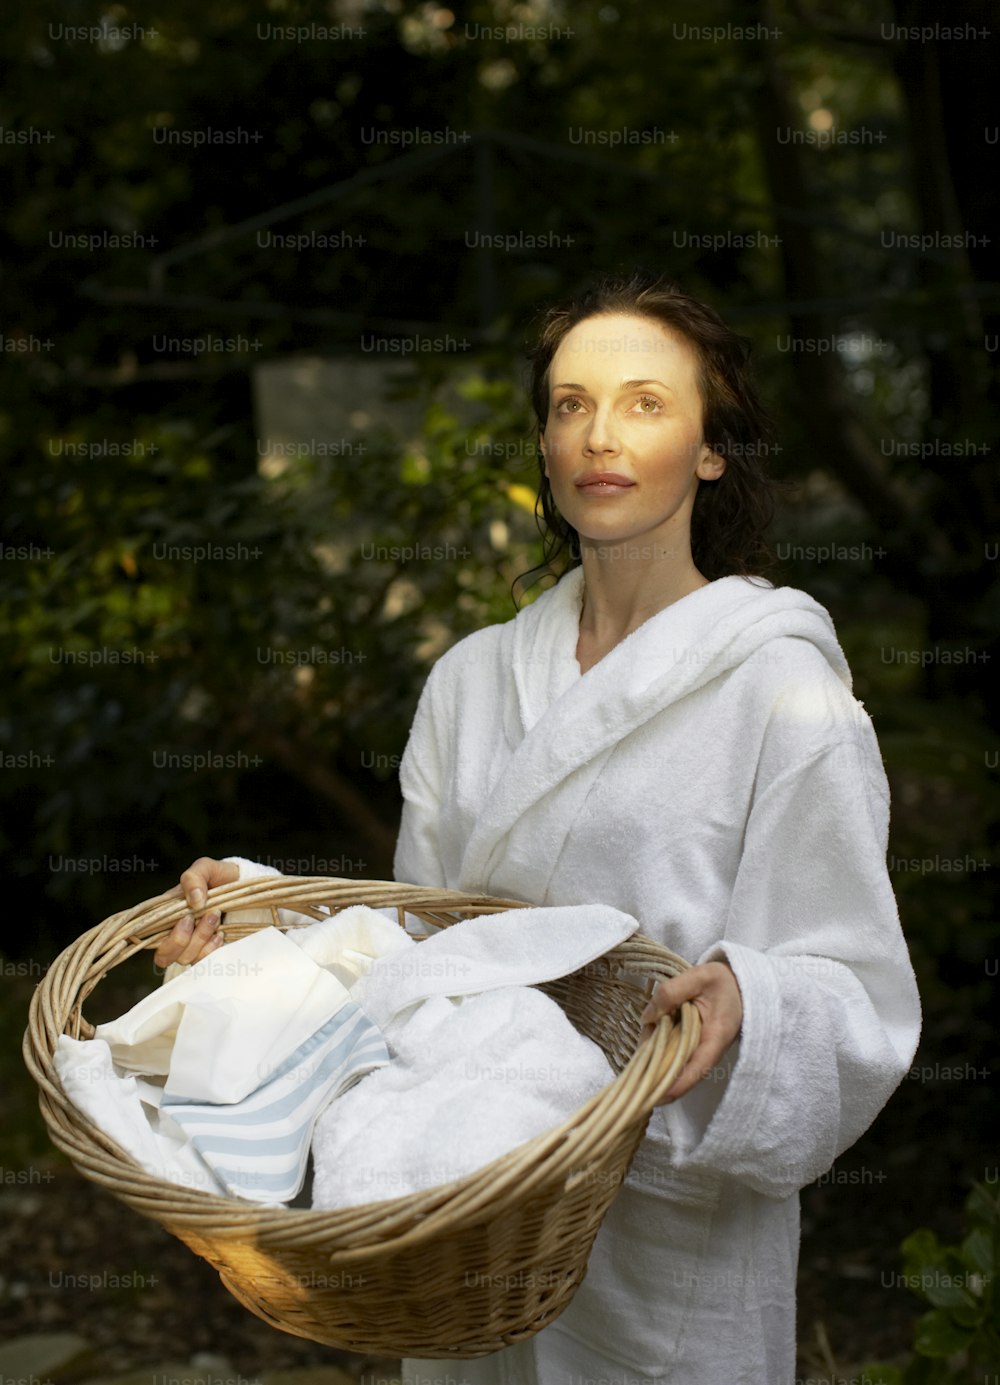 Una mujer sosteniendo una canasta de toallas blancas